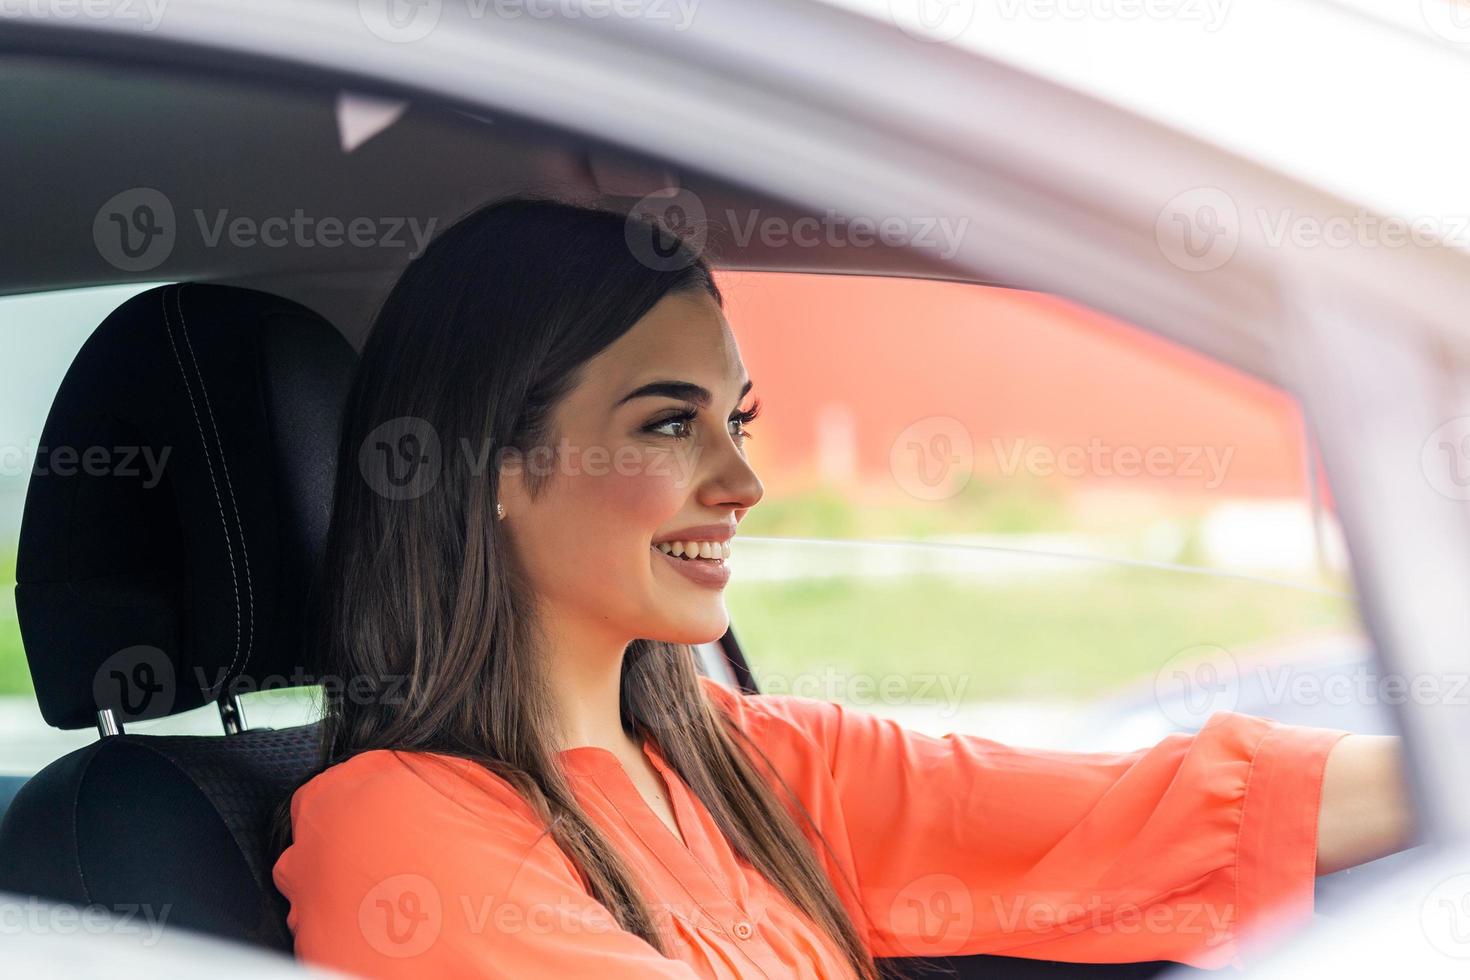 jolie jeune femme heureuse de conduire une voiture. image de belle jeune femme conduisant une voiture et souriant. Portrait of happy female driver voiture de direction avec ceinture de sécurité photo